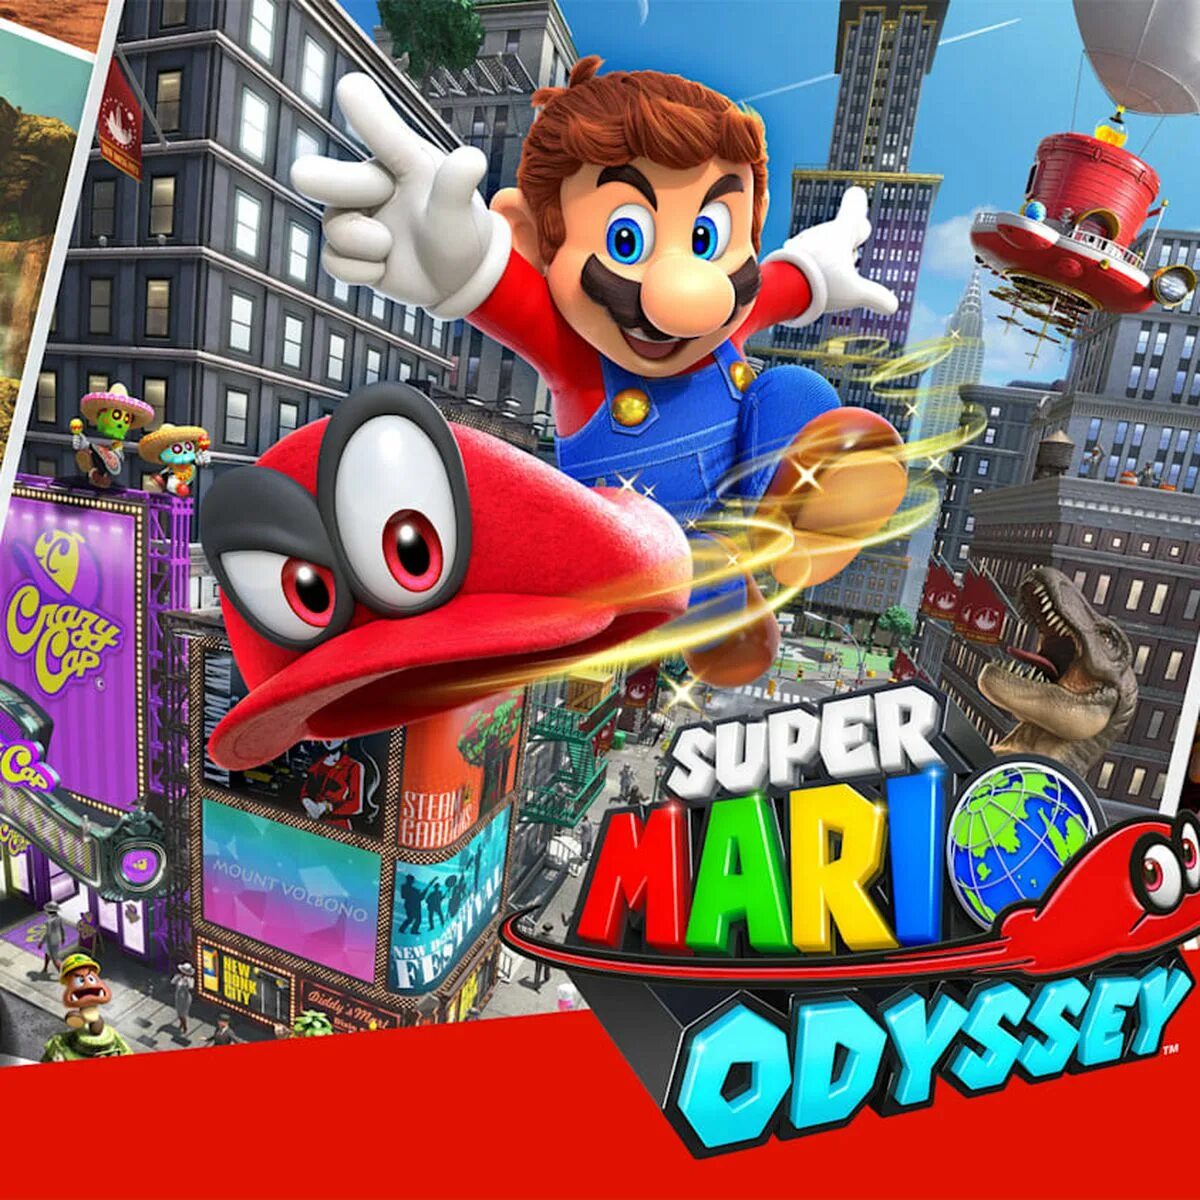 Марио одиссей купить. Super Mario Odyssey Nintendo Switch. Супер Марио Одиссей на Нинтендо. Mario Odyssey Xbox 360. Супер Марио Одиссей Поваруша.